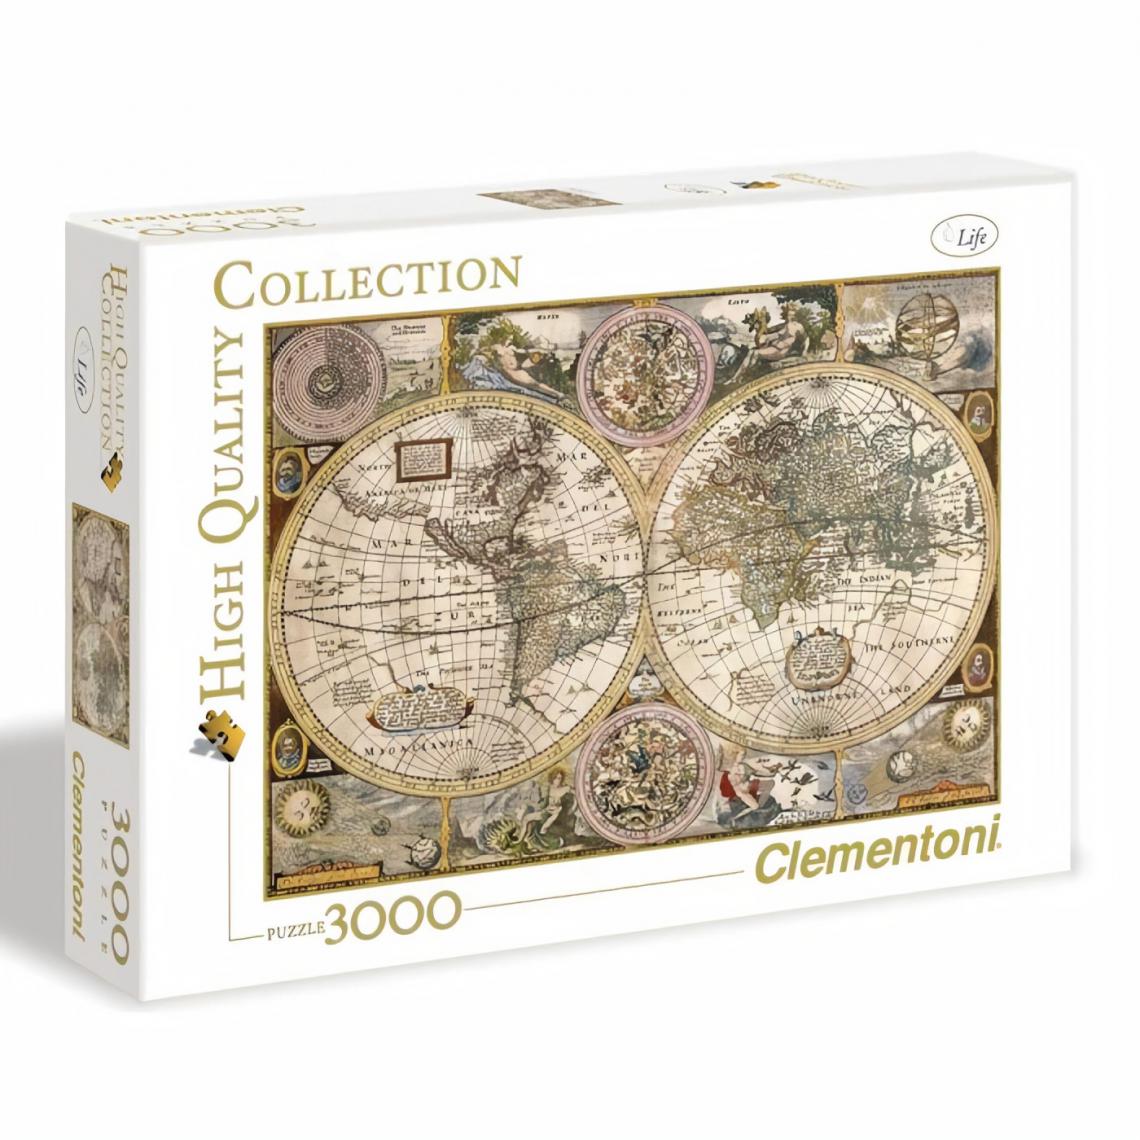 Clementoni - PUZZLE 3000 pieces - Carte ancienne - 188 X 84 cm - Animaux